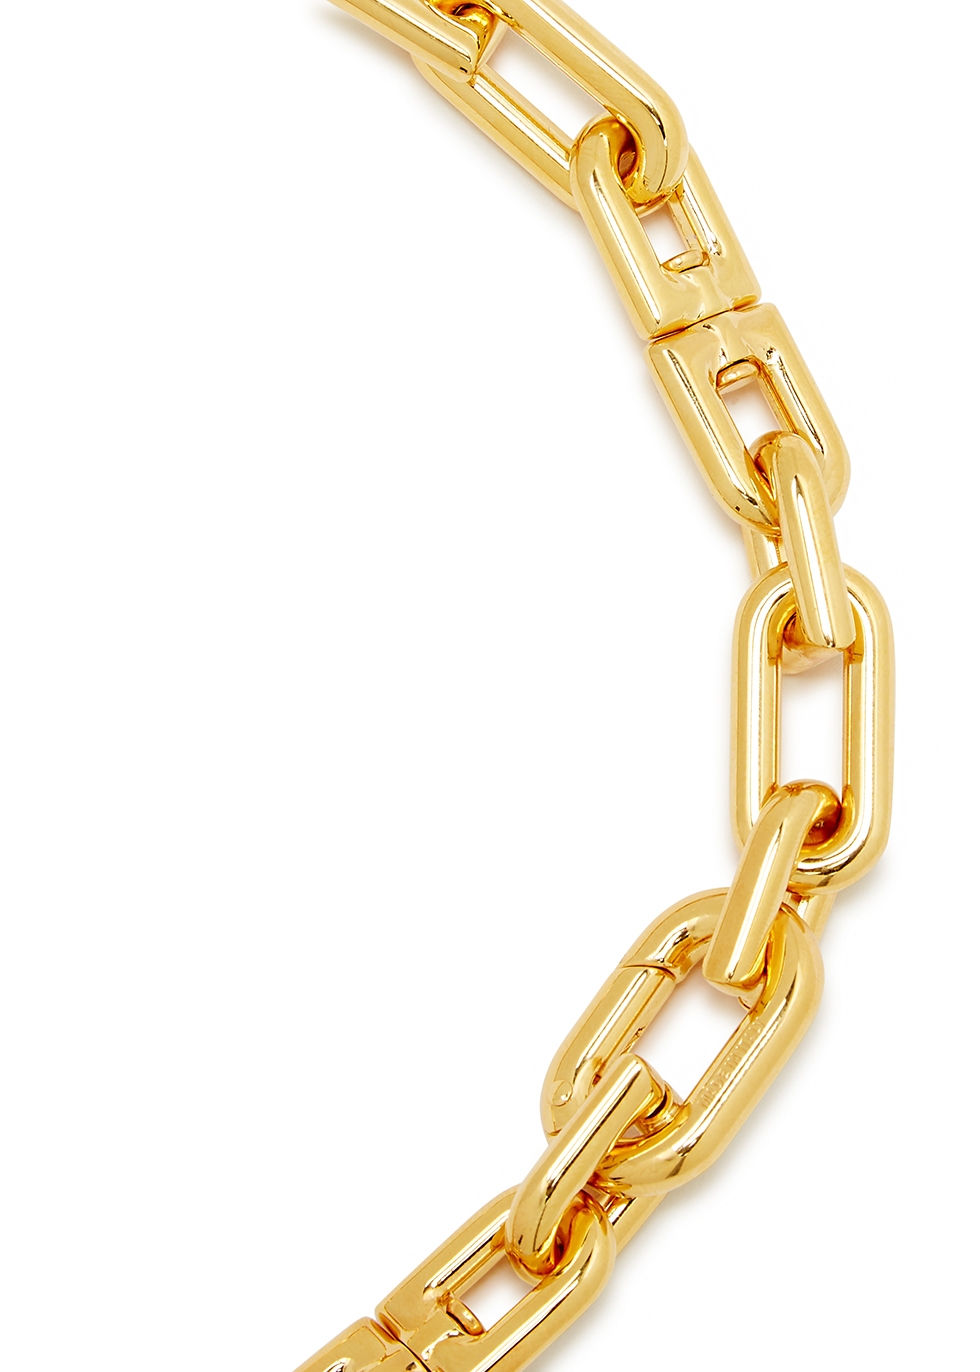 Blogo chainlink necklace  Balenciaga  Chain link necklace Link necklace  Necklace